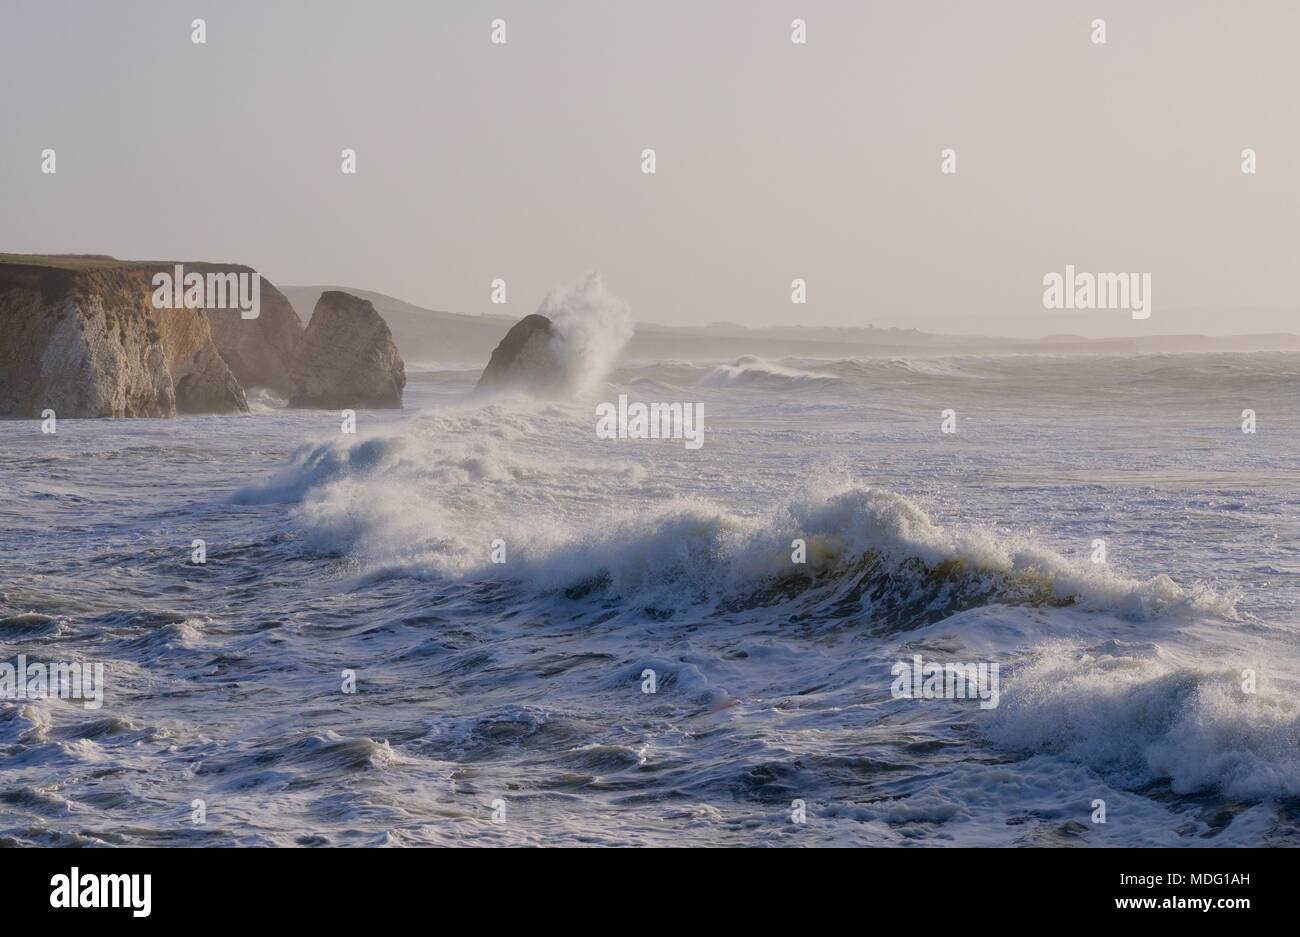 rough sea with large waves crashing onto rocks at Freshwater Bay, Isle of Wight, United Kingdom Stock Photo